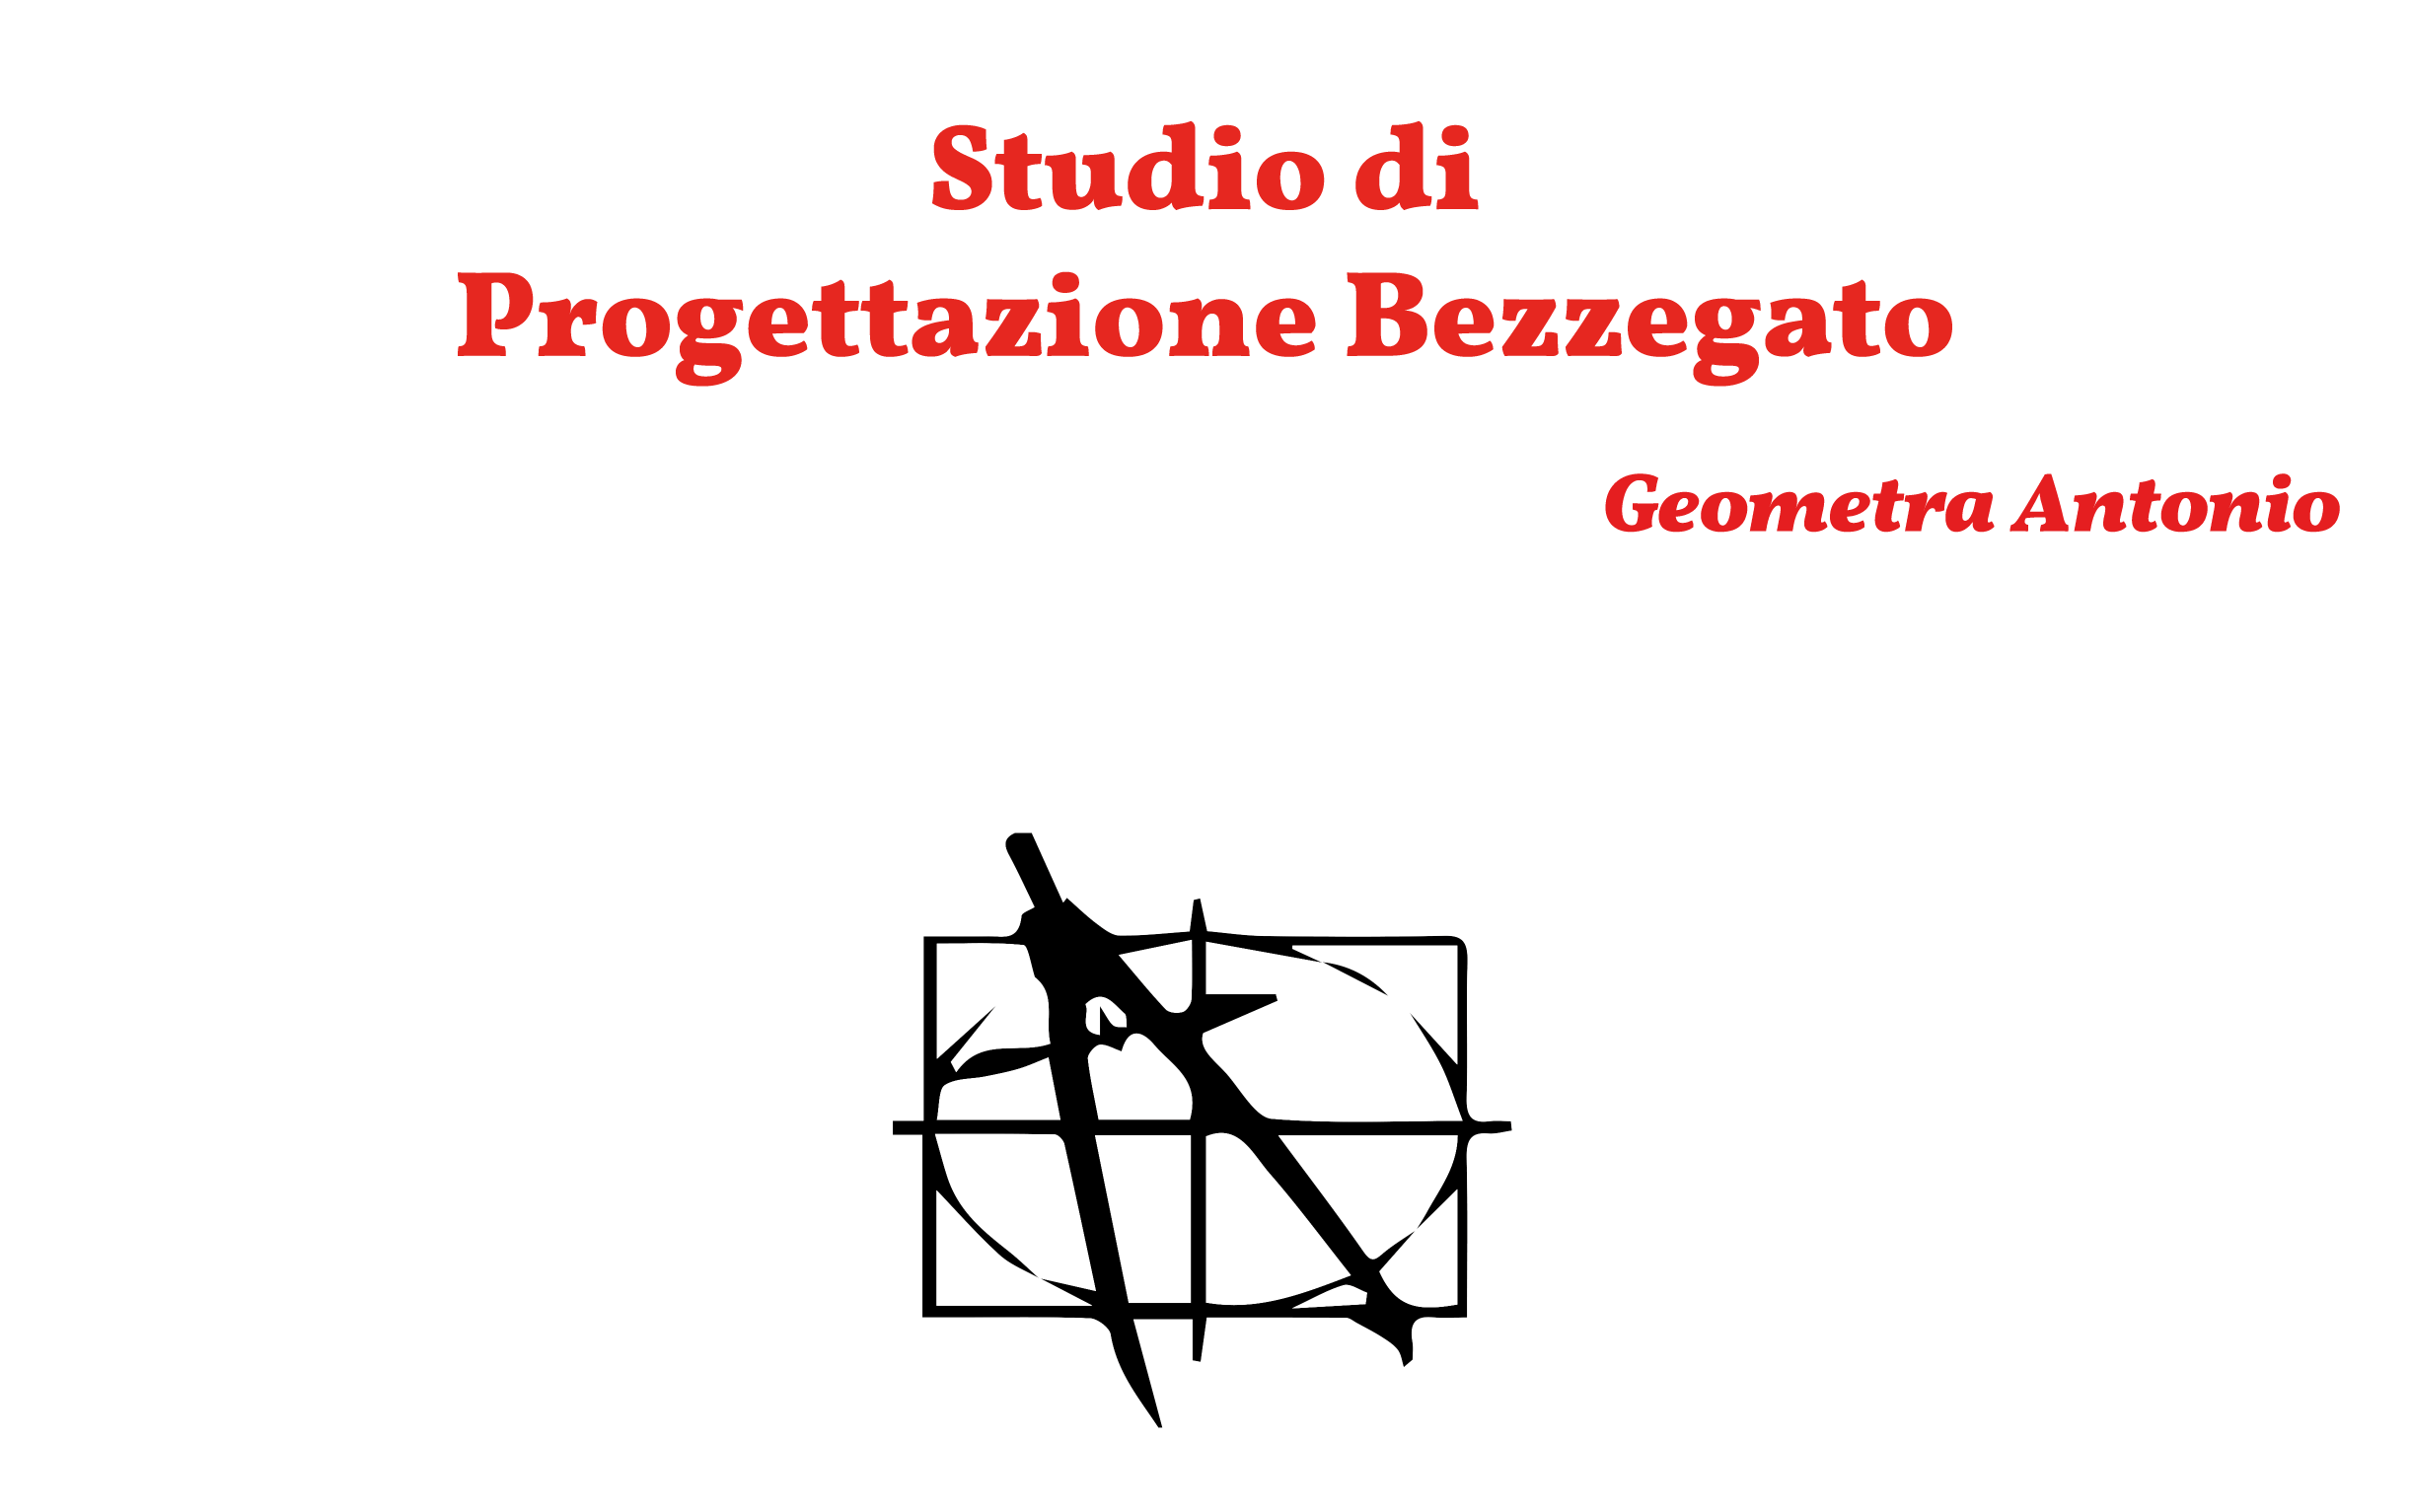  STUDIO DI PROGETTAZIONE BEZZEGATO GEOMETRA ANTONIO